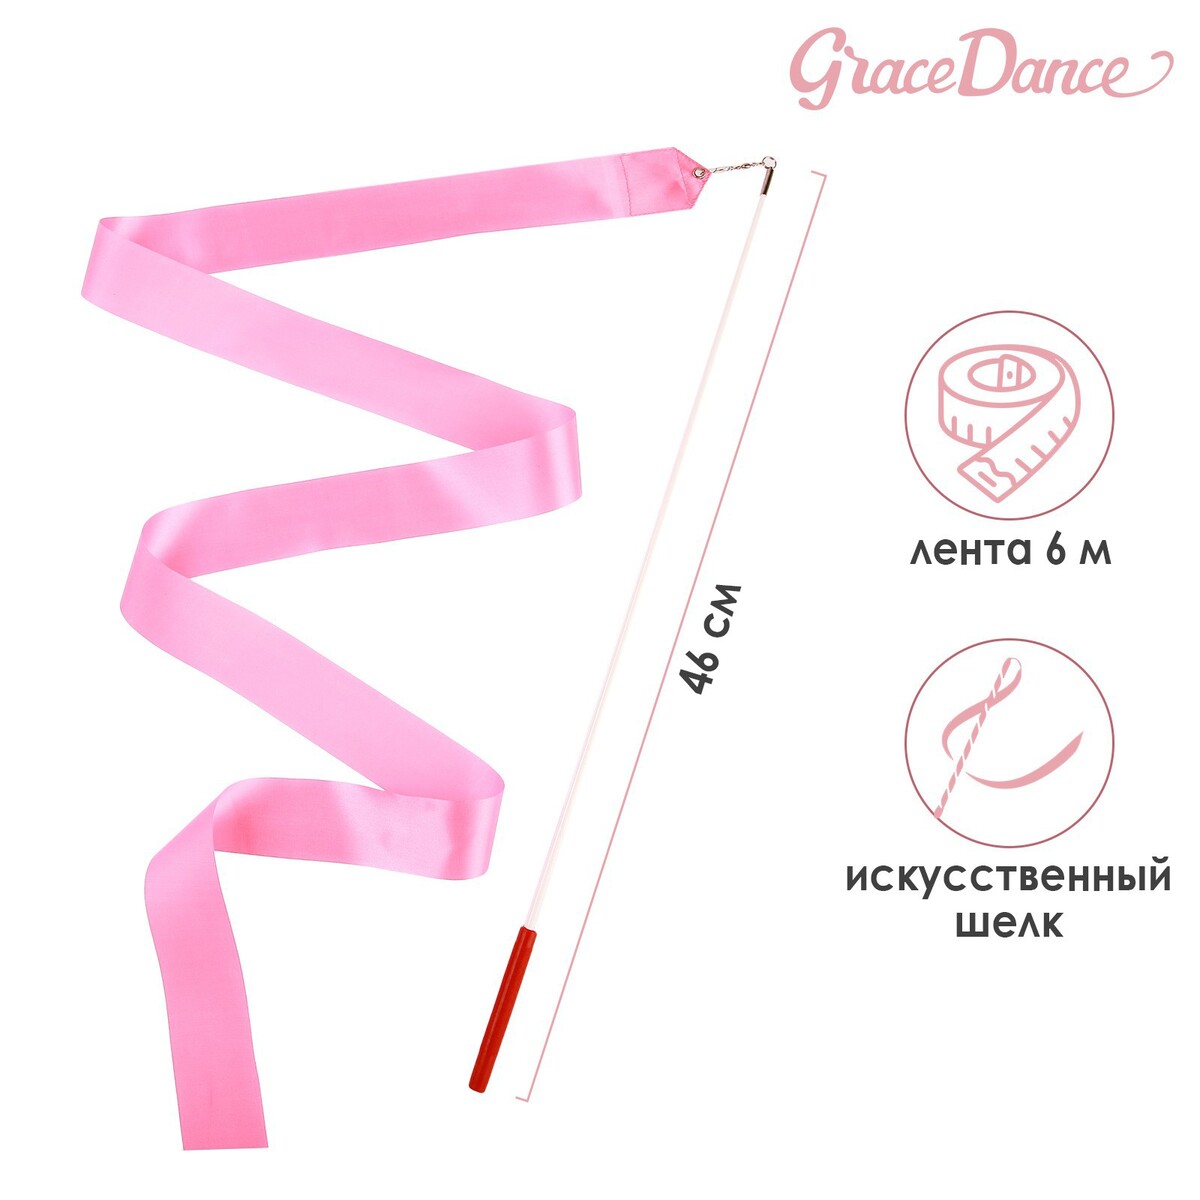 Лента для художественной гимнастики с палочкой grace dance, 6 м, цвет розовый лента гимнастическая с палочкой grace dance 4 м оранжевый